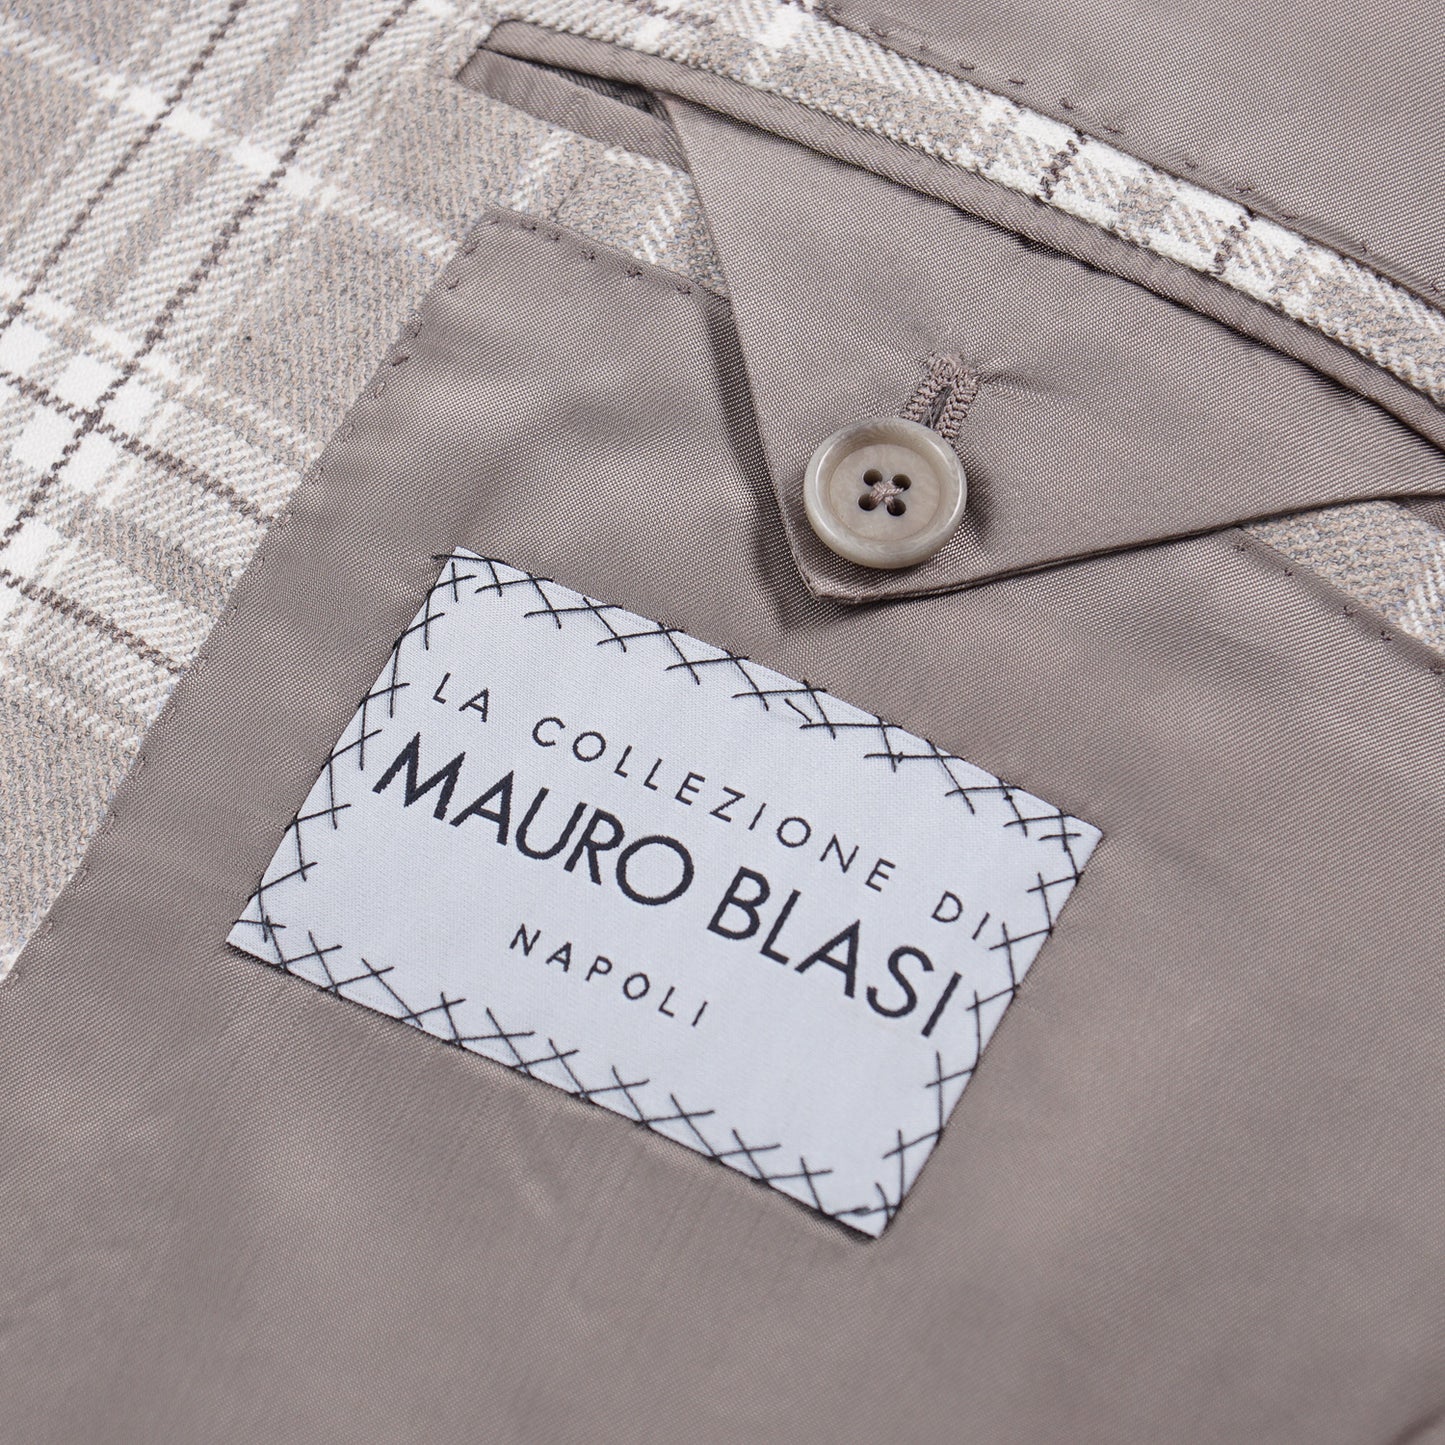 Mauro Blasi Slim-Fit Cashmere Sport Coat - Top Shelf Apparel